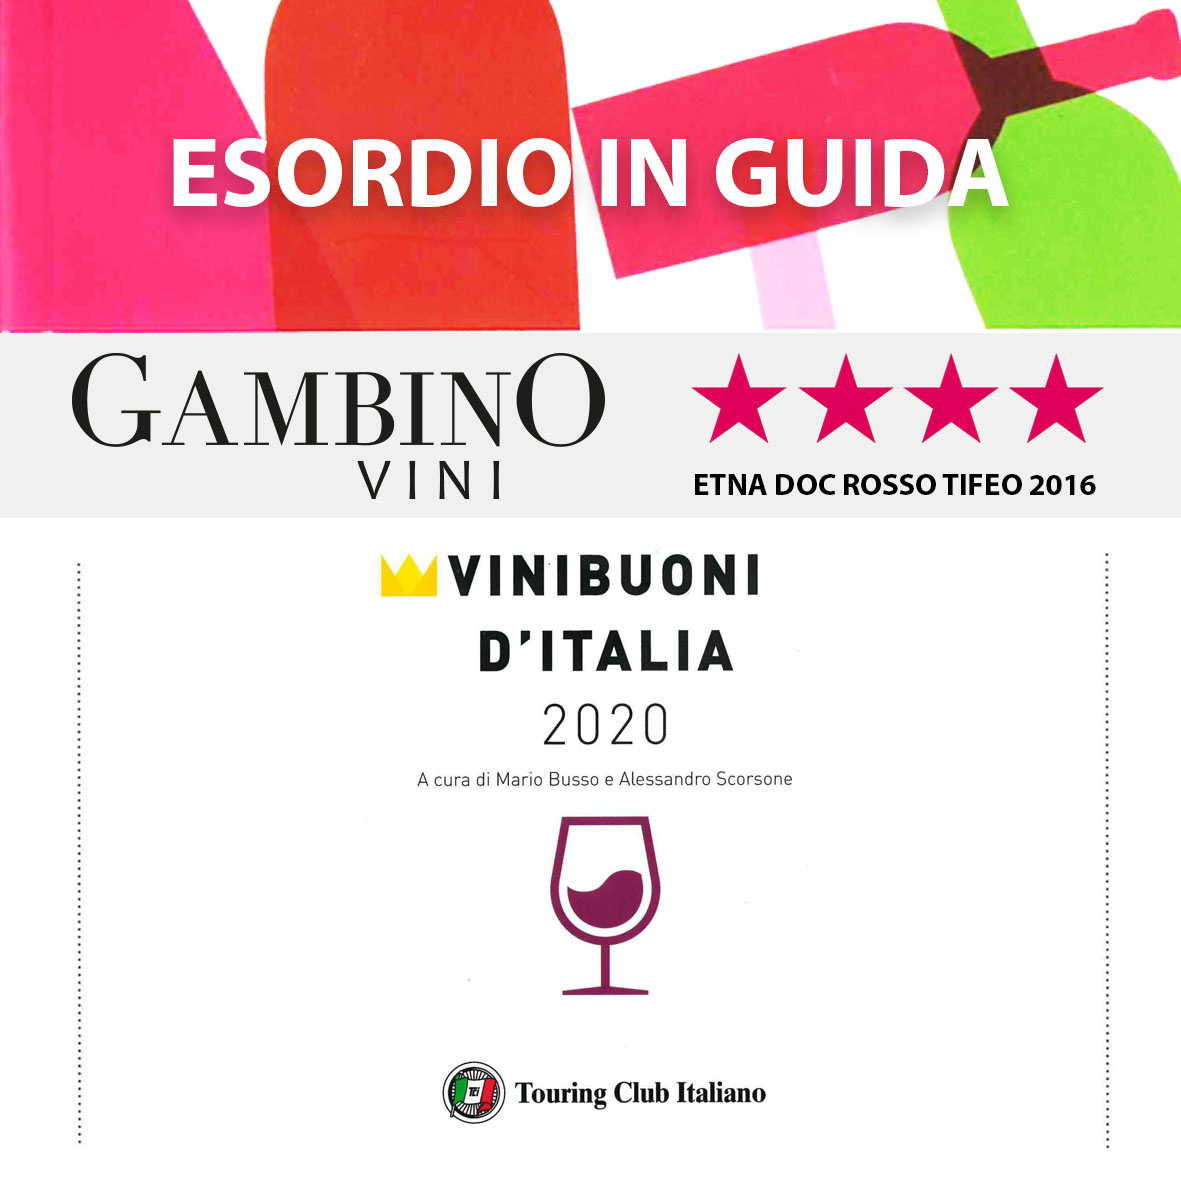 Premio per Gambino in guida Vini Buoni d'Italia